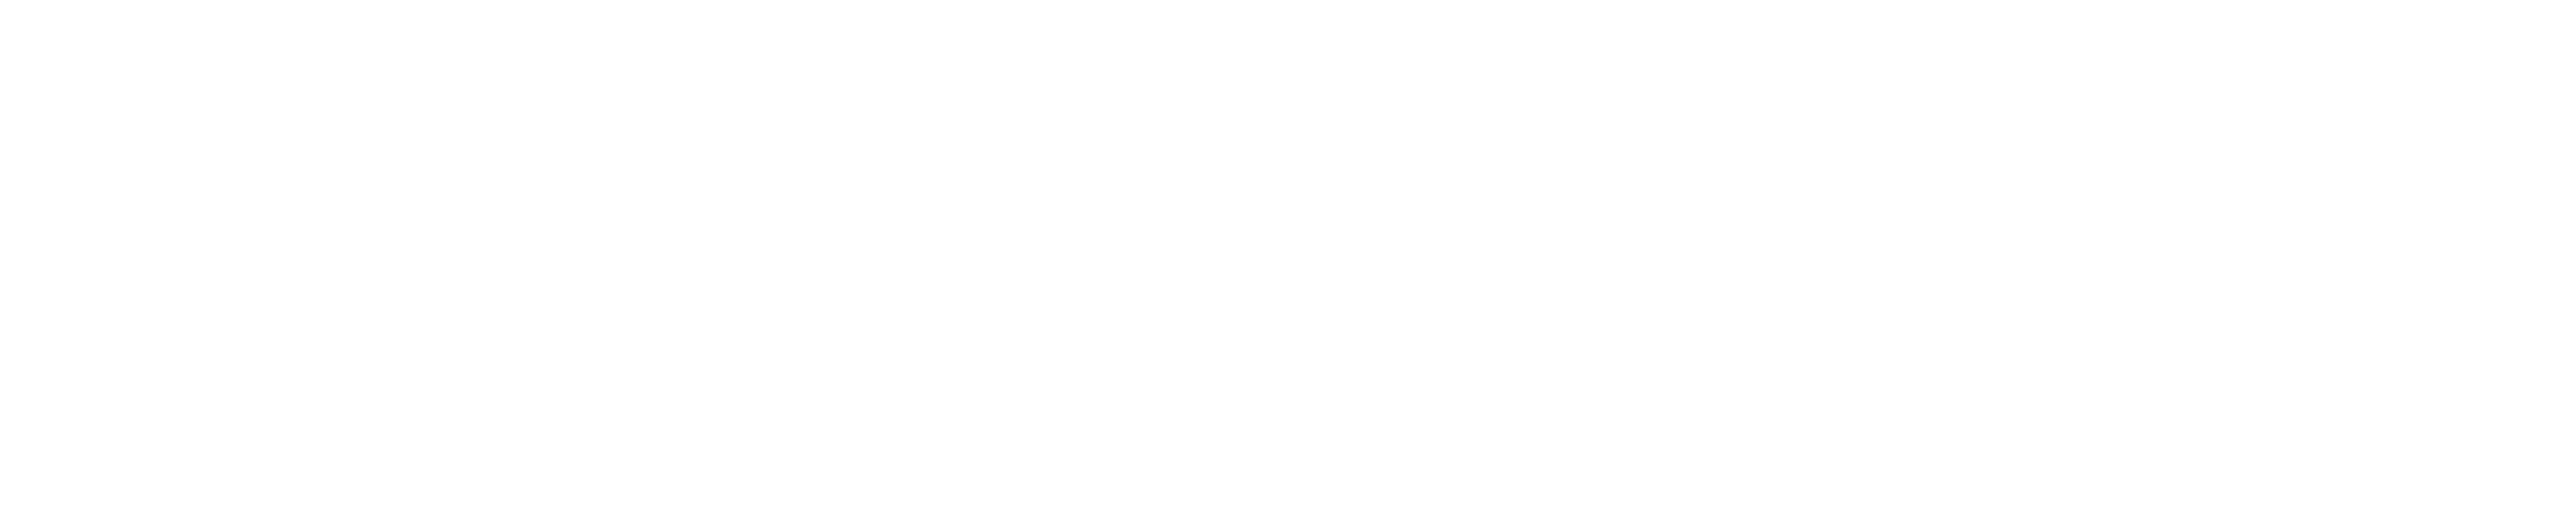 TechEdge Academy